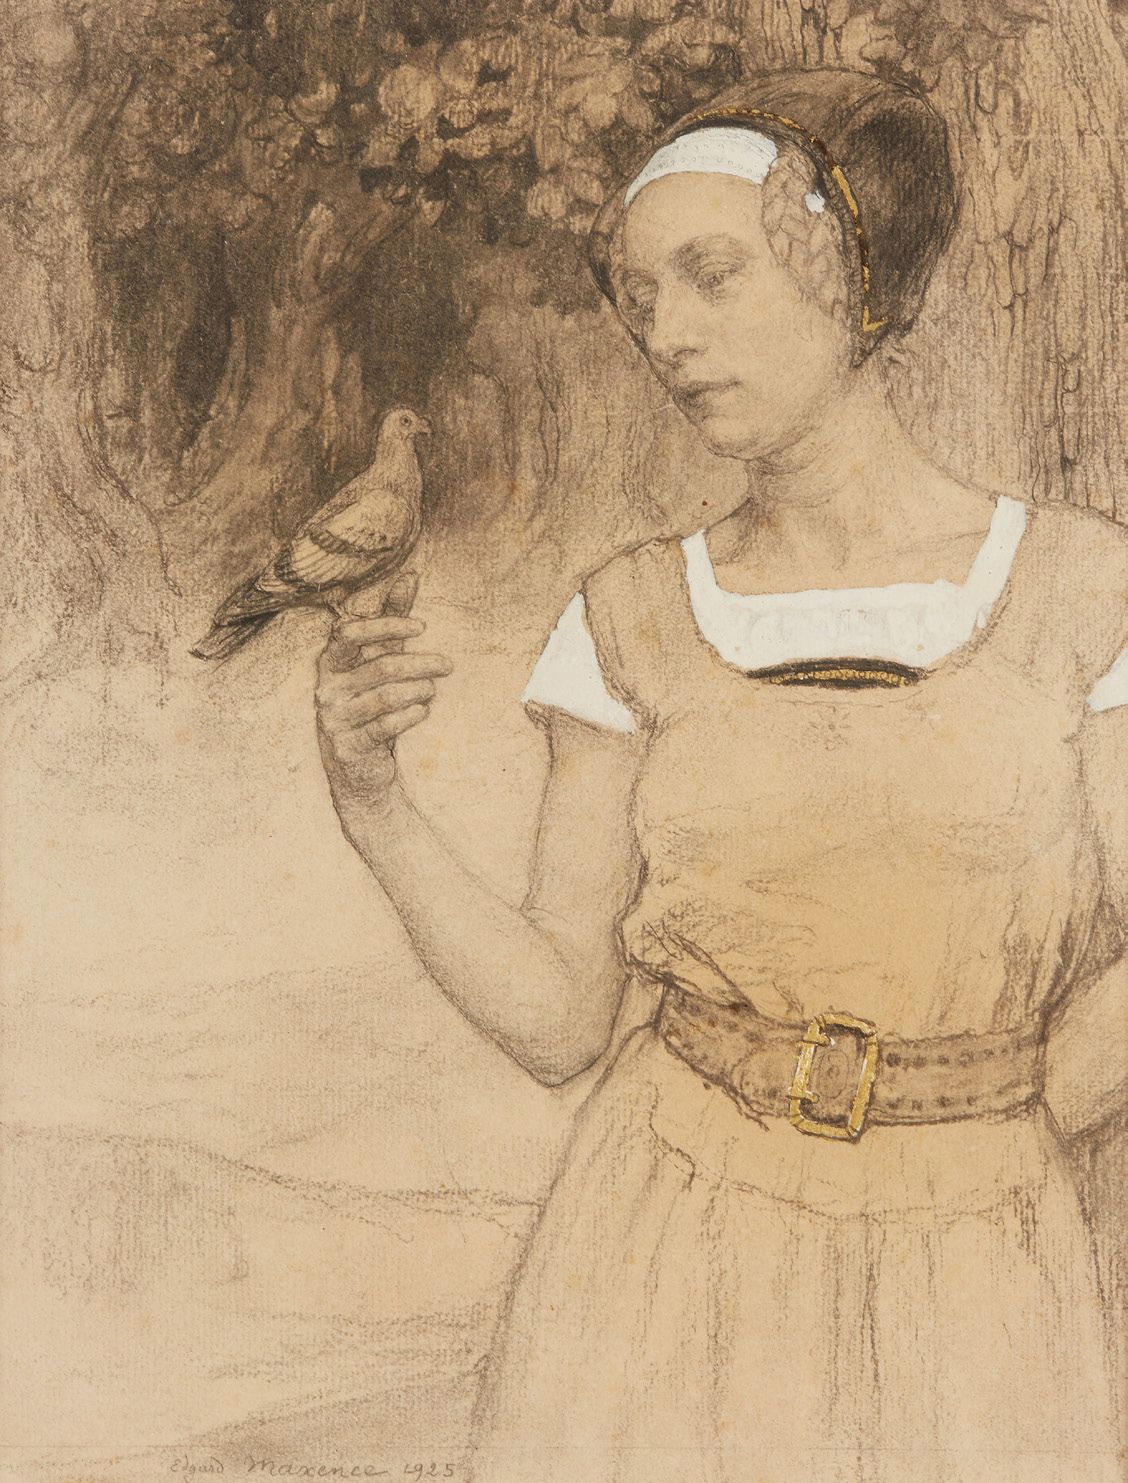 Edgard MAXENCE (1871-1954) 带鸽子的女人
铅笔，金色高光和白色水粉，右上方有签名和日期。
28.5 x 22 cm